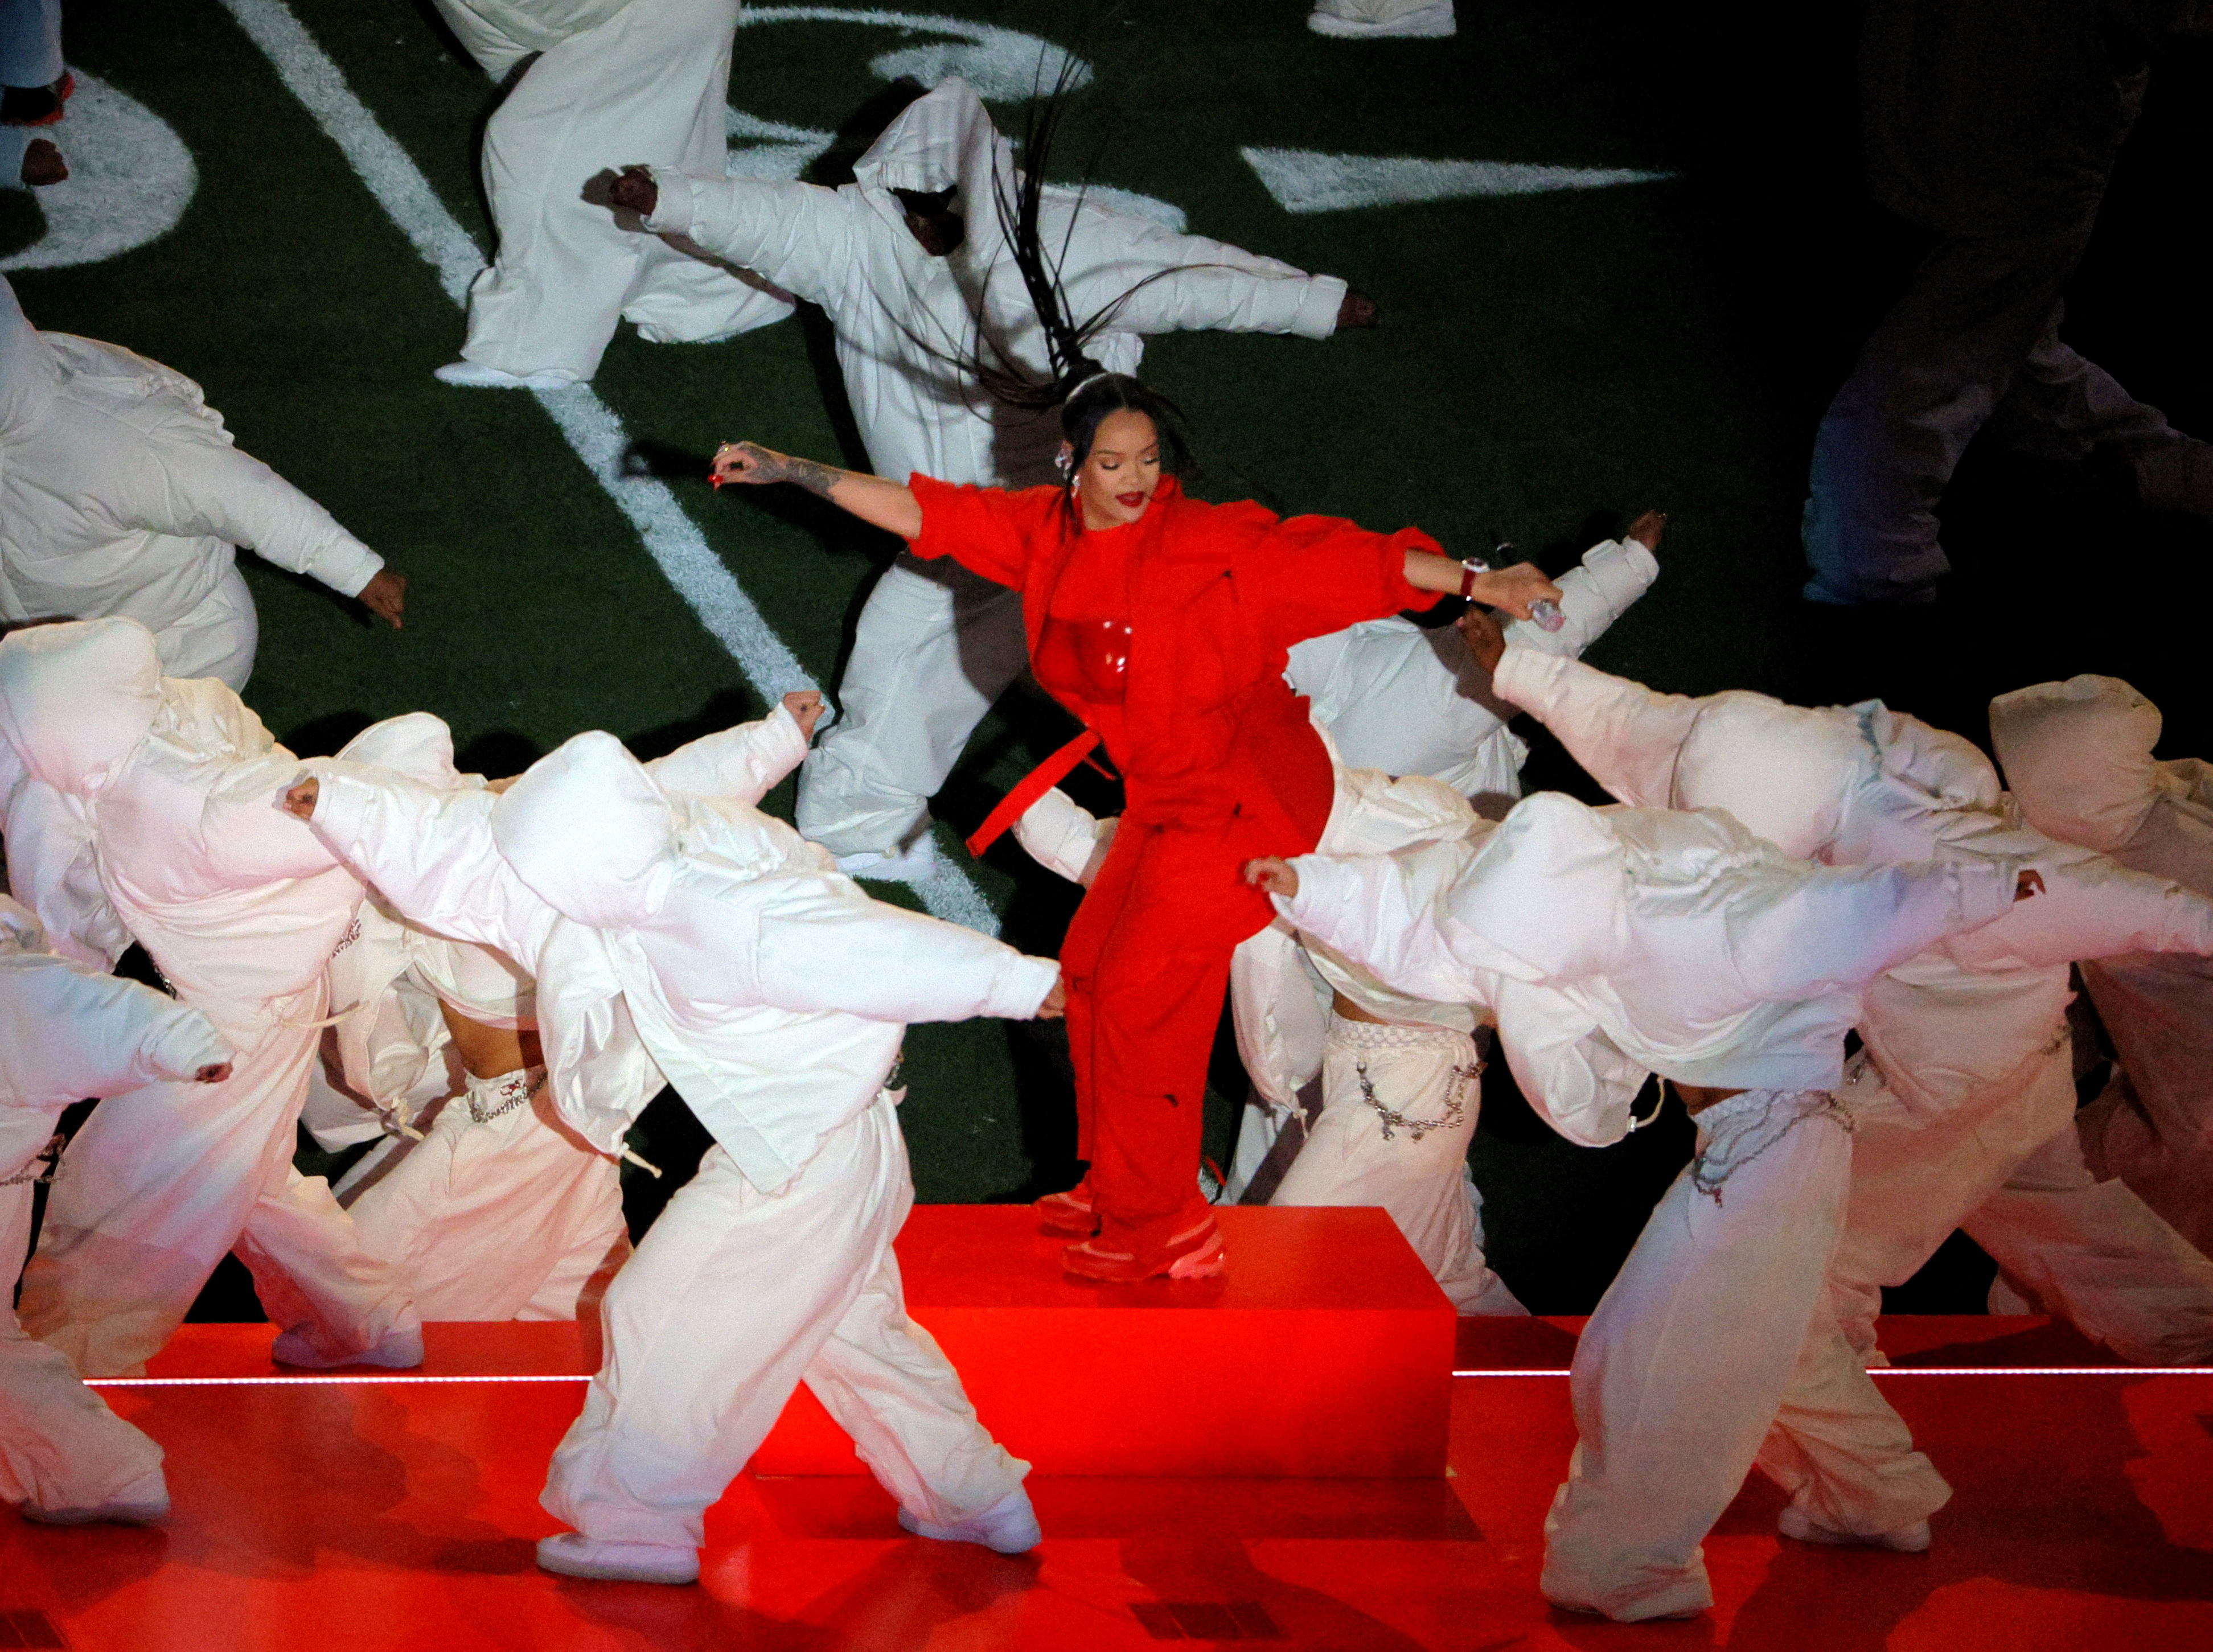 Además del inigualable talento de Rihanna, su show se caracterizó por sus sencillas coreografías. (Foto: REUTERS/Caitlin O'hara)